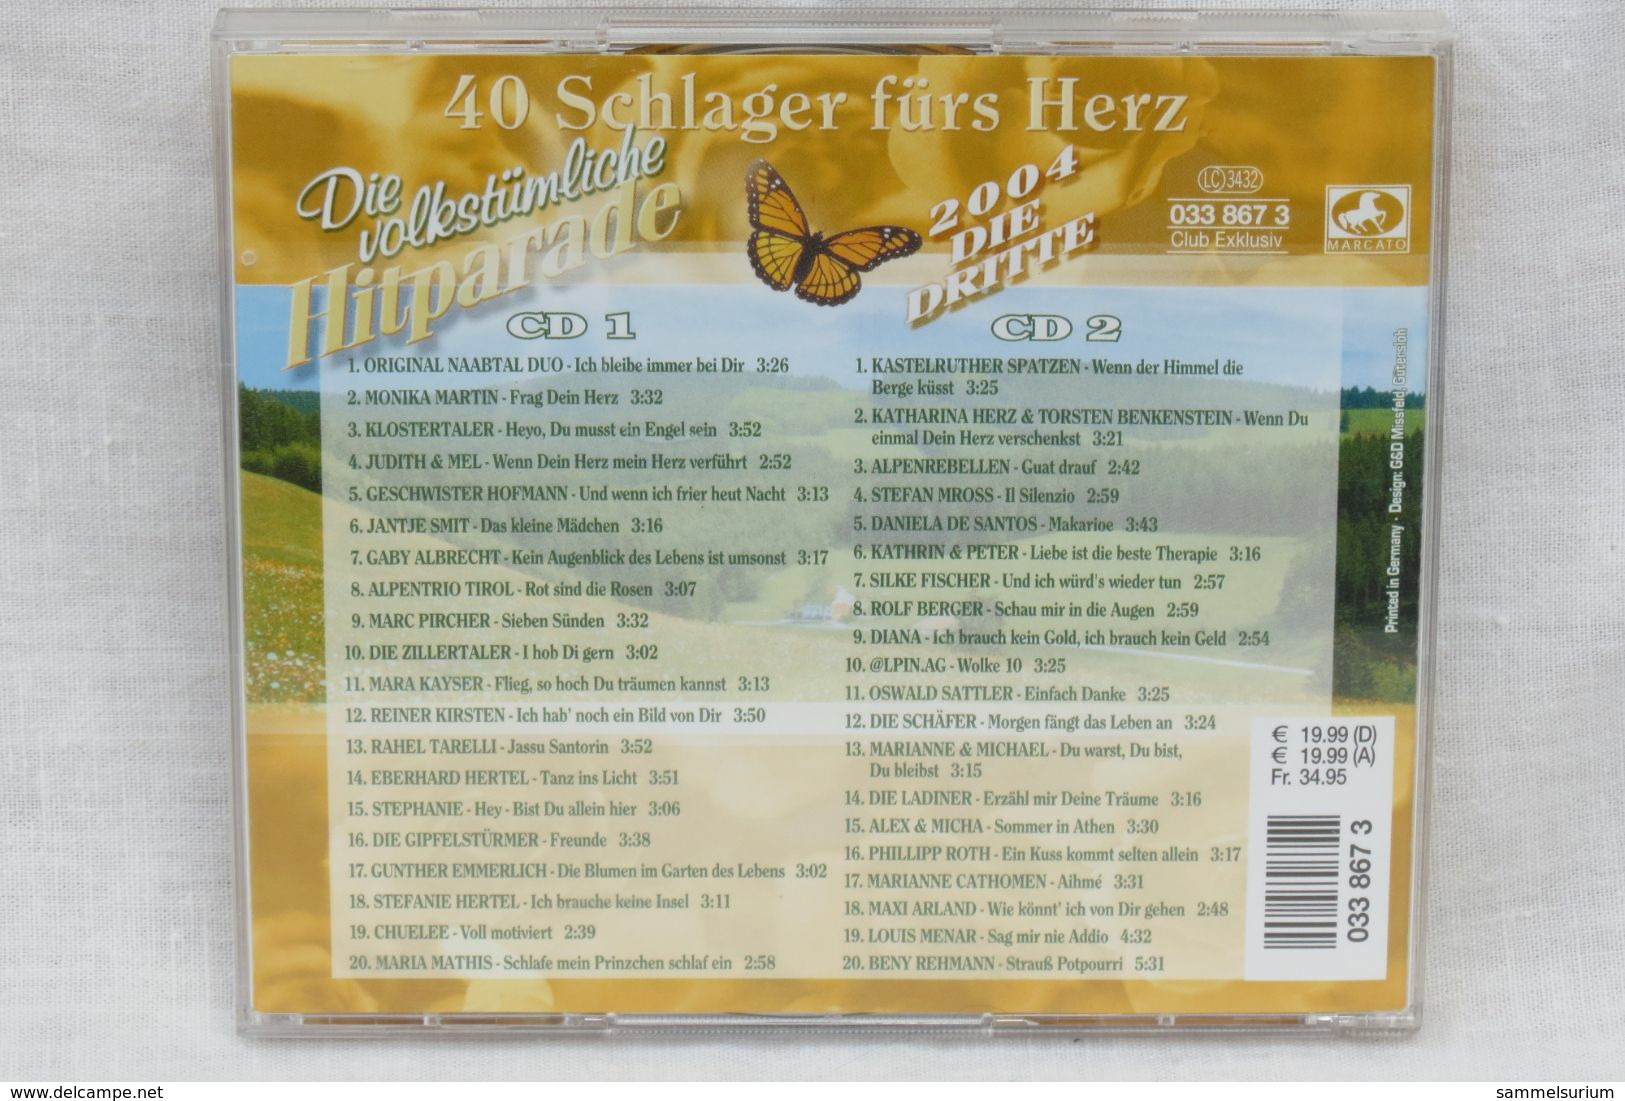 2 CDs "Die Volkstümliche Hitparade" 40 Schlager Fürs Herz, Ausgabe 2004 Die Dritte - Sonstige - Deutsche Musik